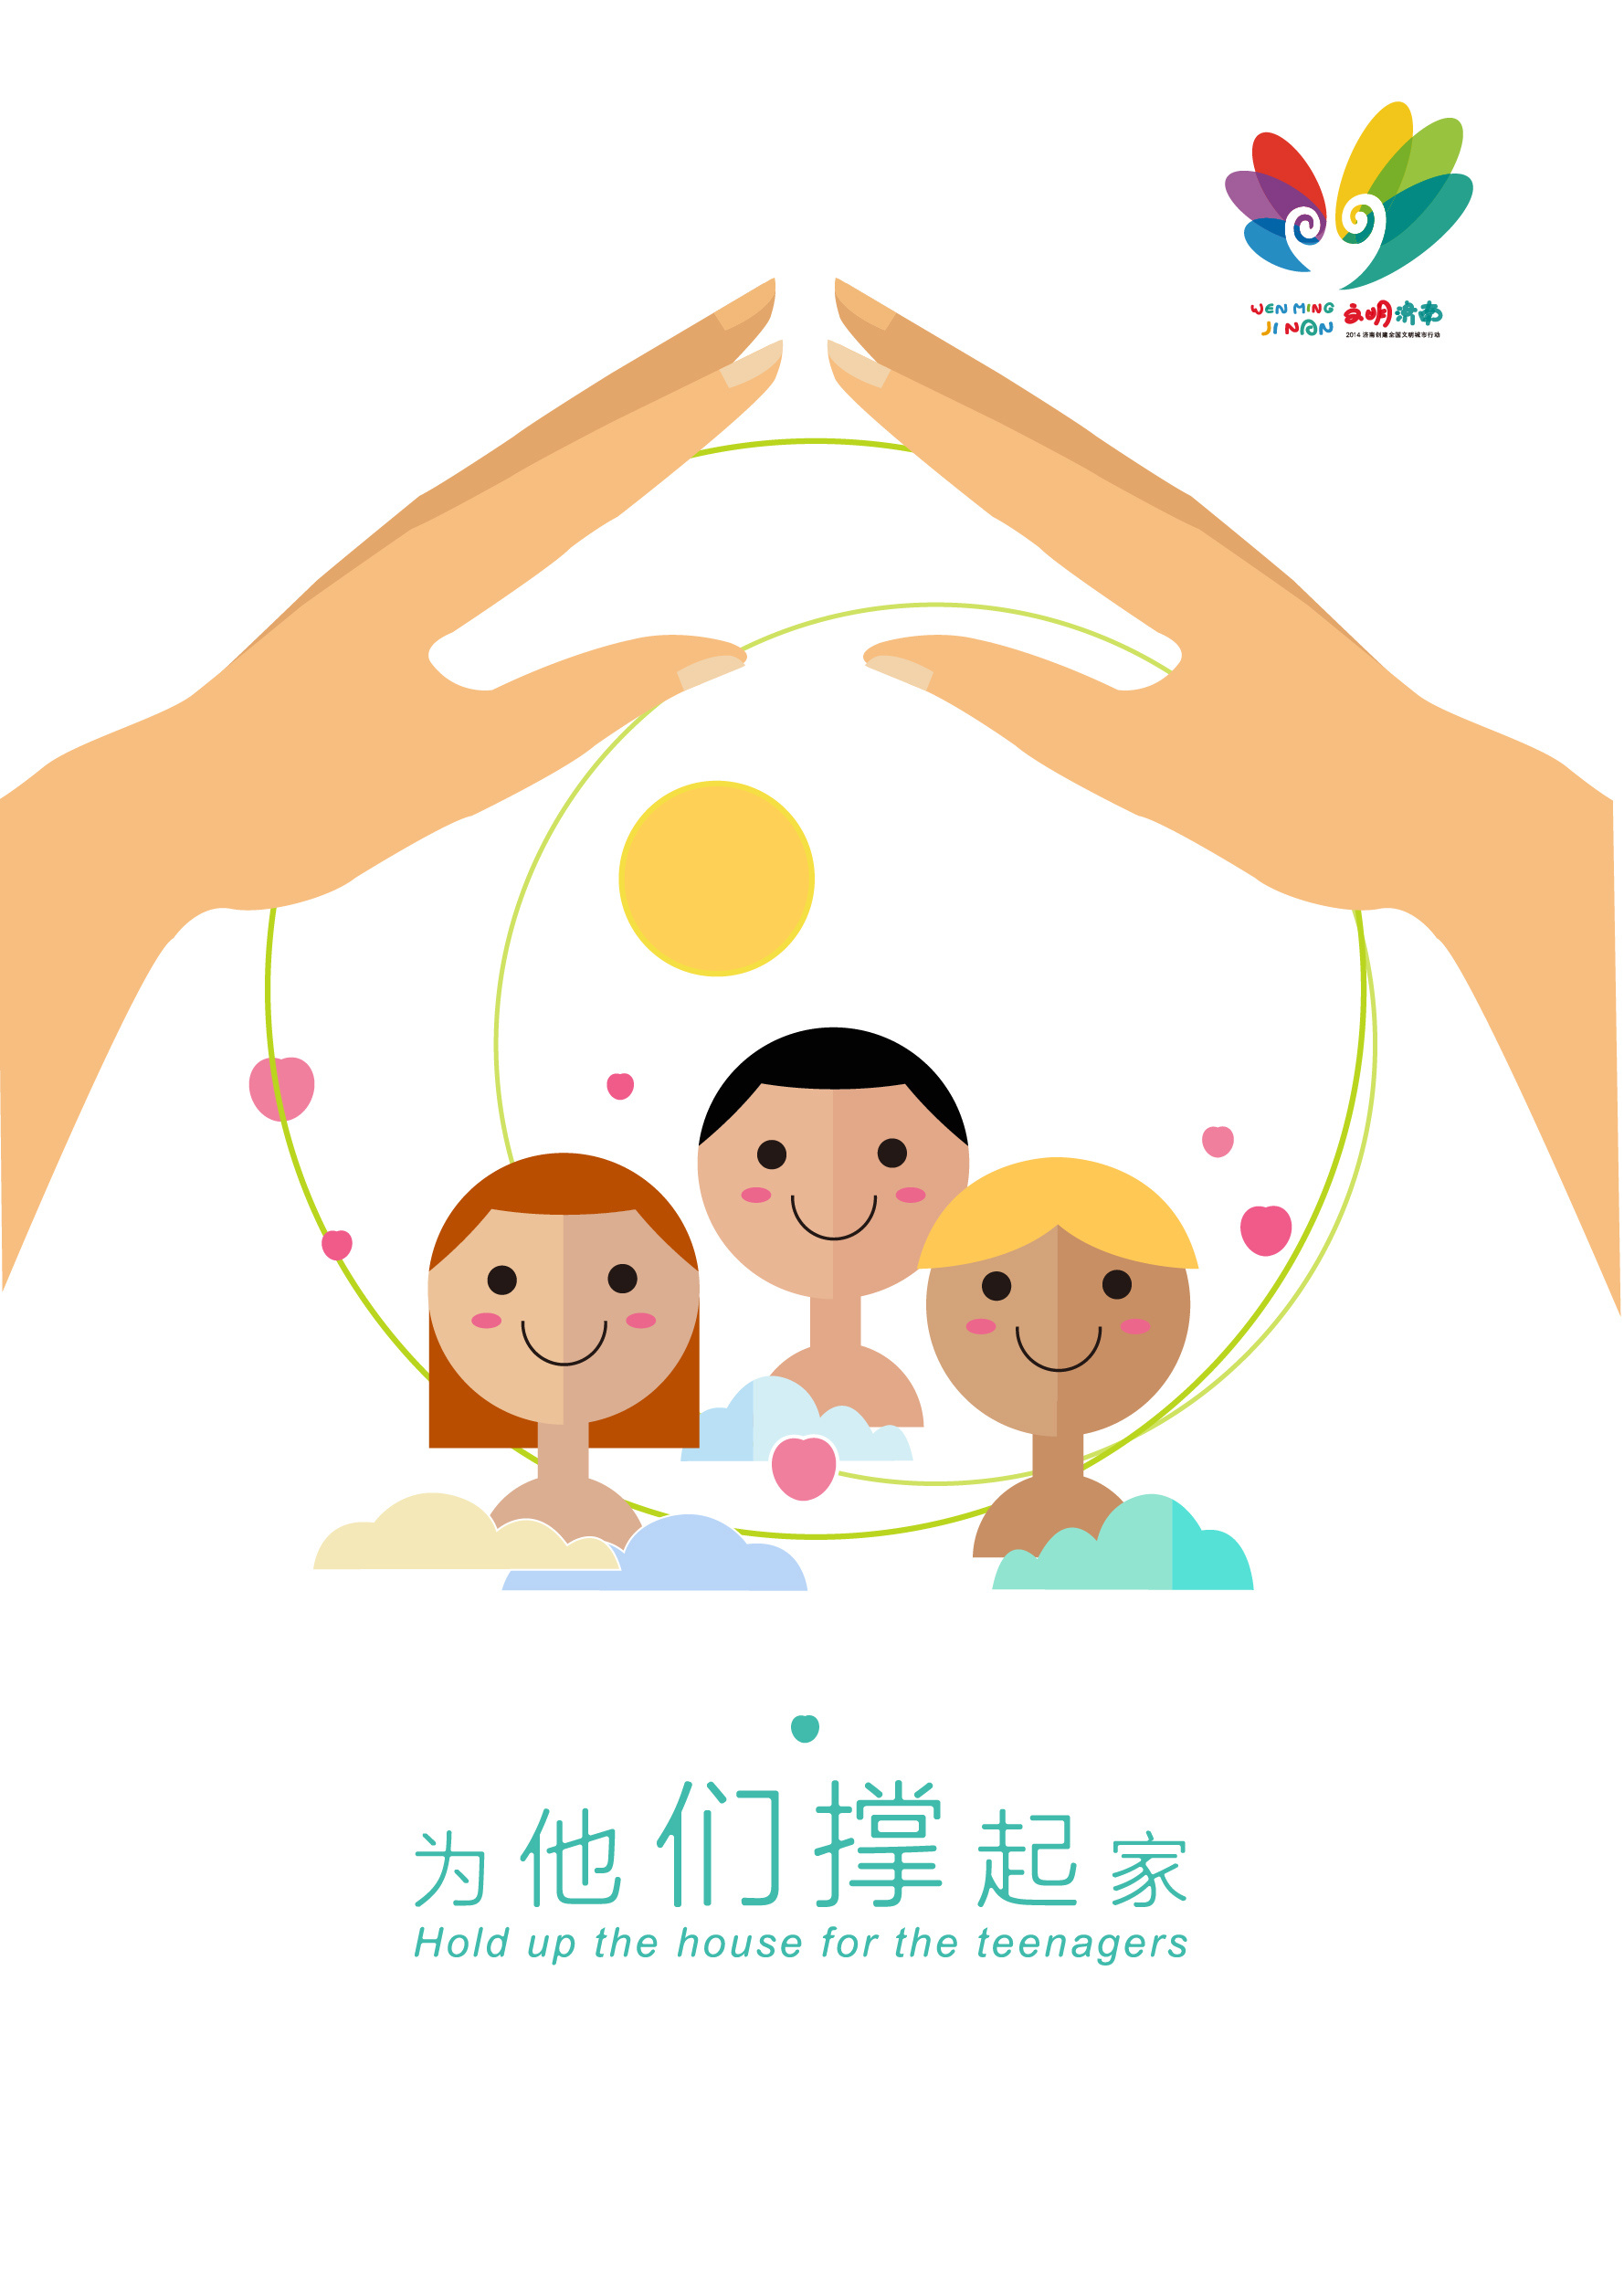 济南市创城公益广告《关爱未成年人》主题海报设计